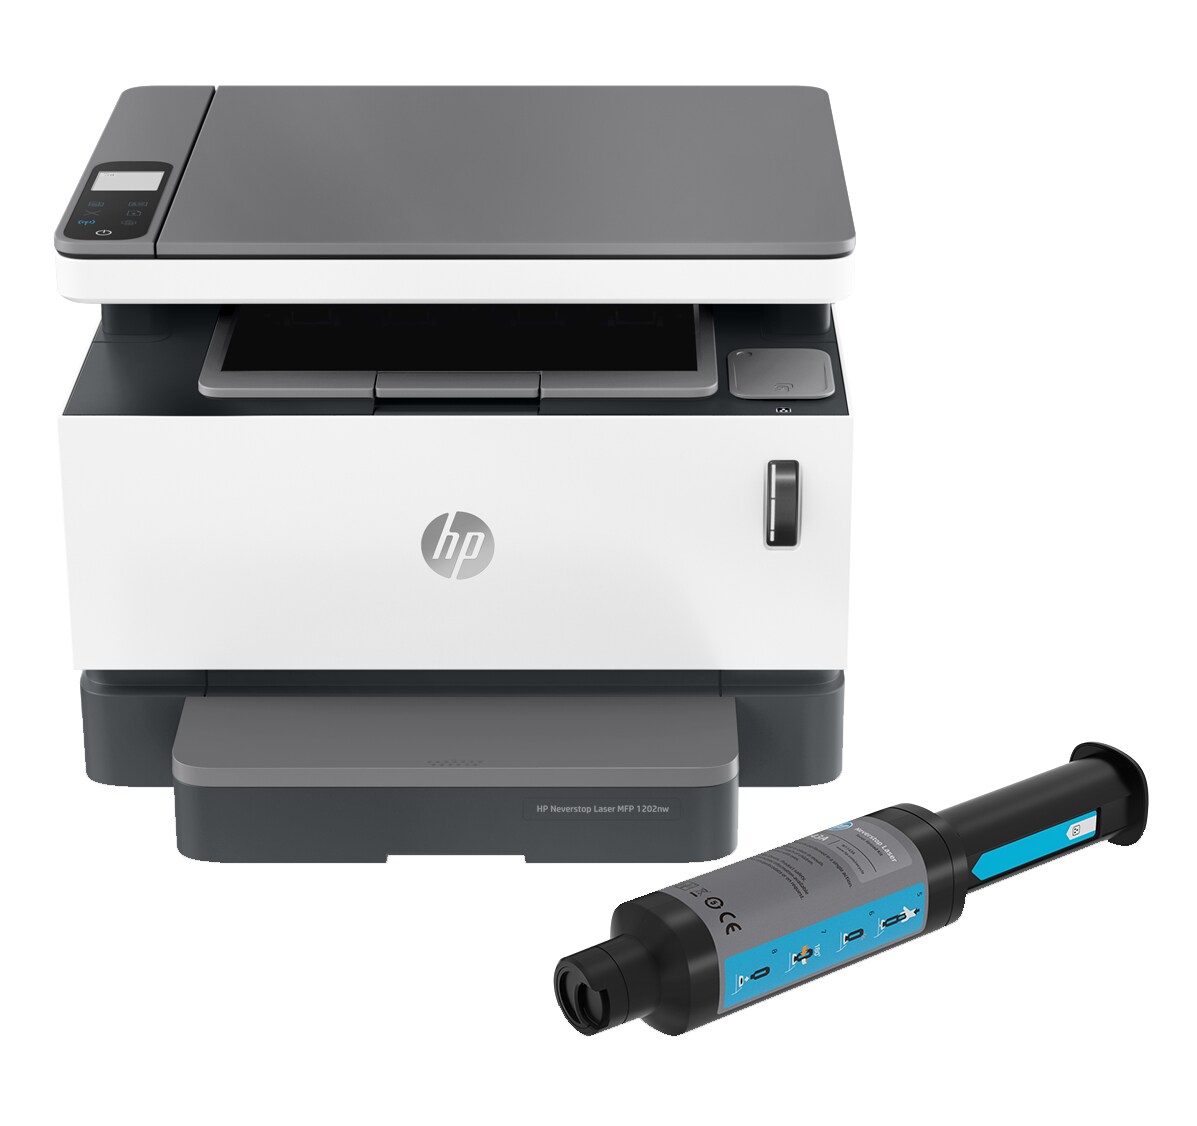 HP Neverstop 1202w Cartridge-Free Laser Tank - multifunction printer - B/W